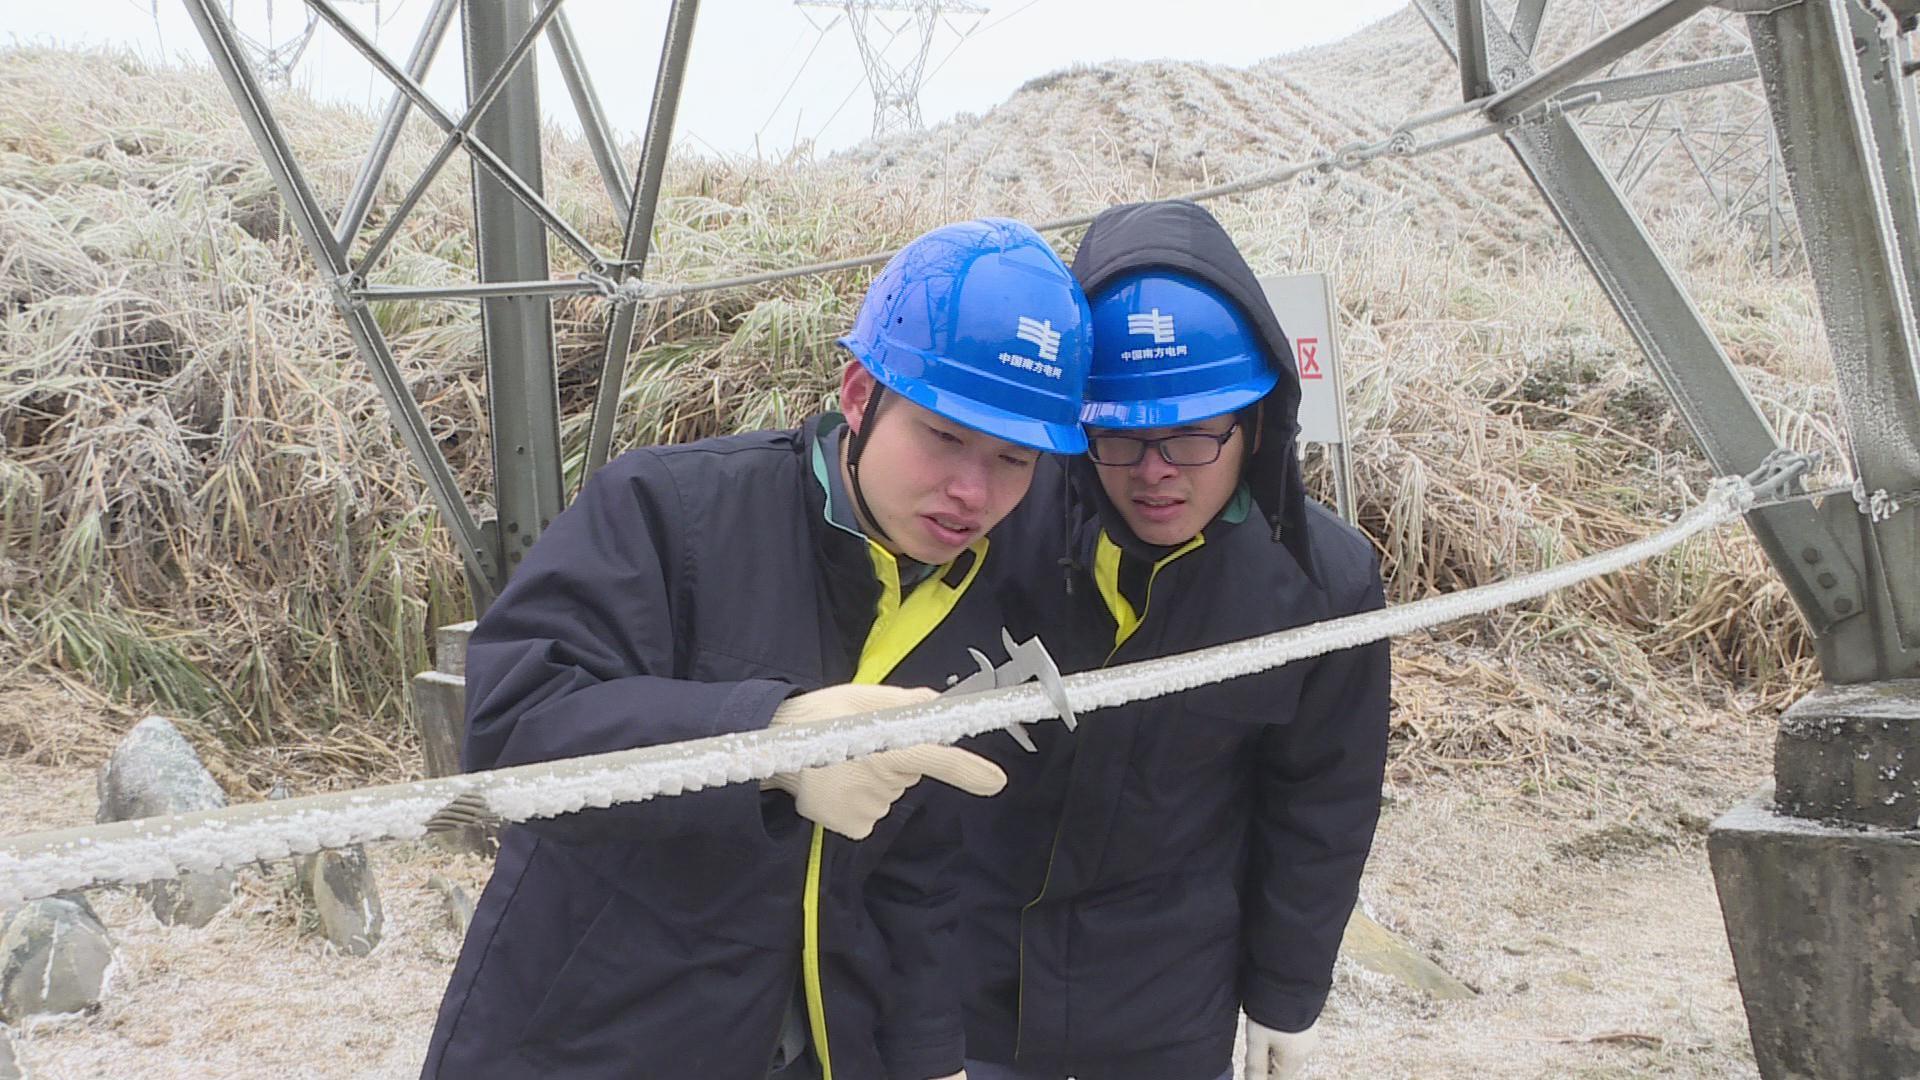 南方电网广东韶关供电局输电管理所工作人员正在测量模拟导线覆冰厚度。 潘跃鹏 摄 